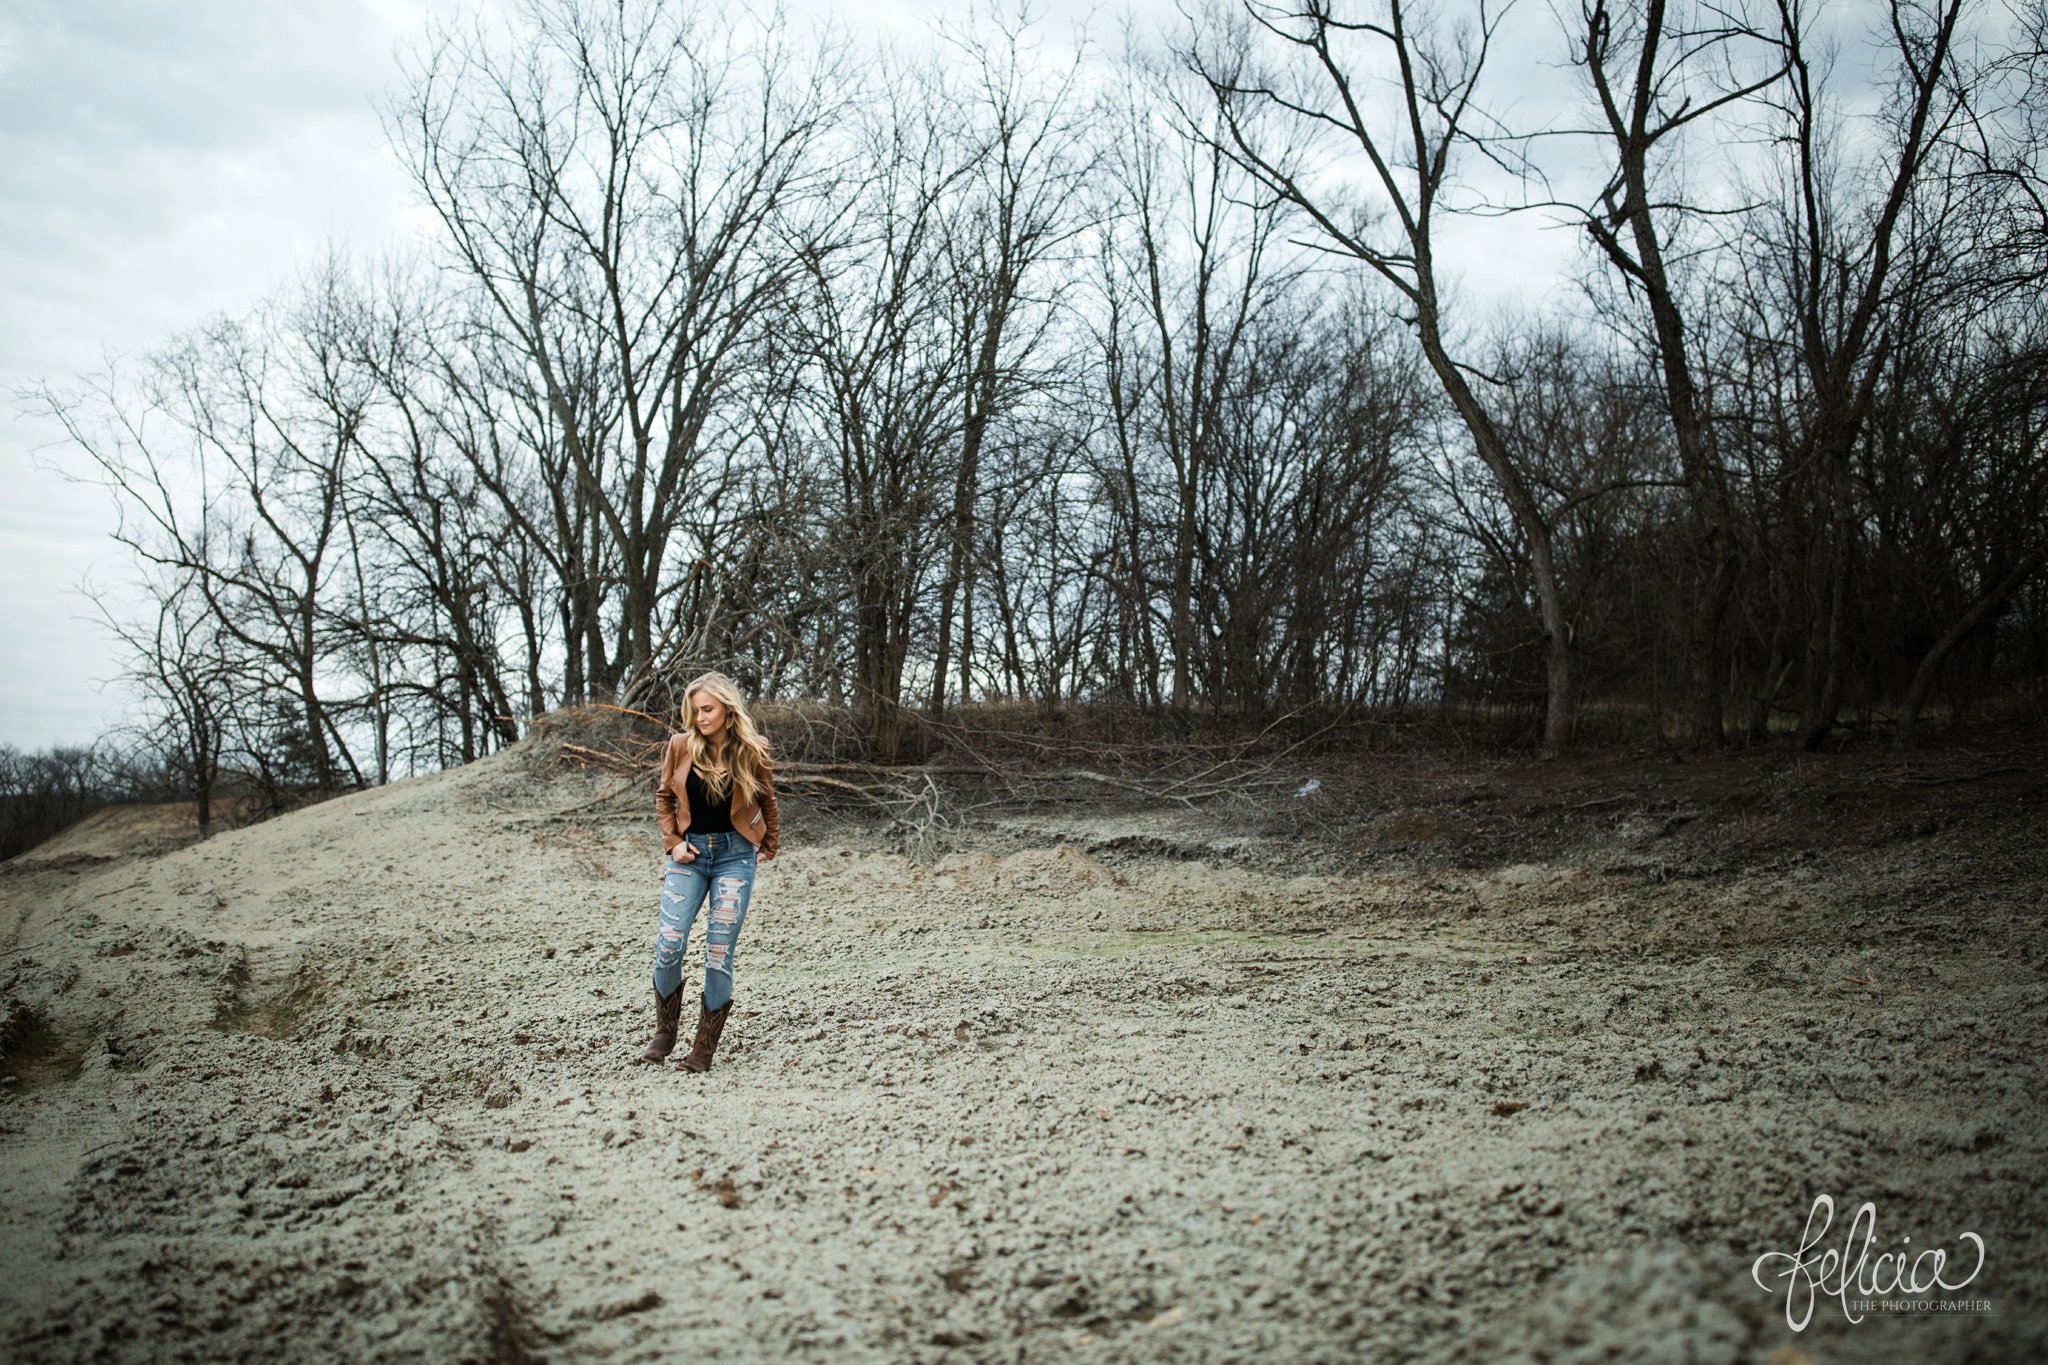 senior photos | senior photography | Lenexa | Kansas | images by feliciathephotographer.com | chic | dancer | dramatic pose | leather jacket  | candid | cowboy boots | rustic background | forest background 